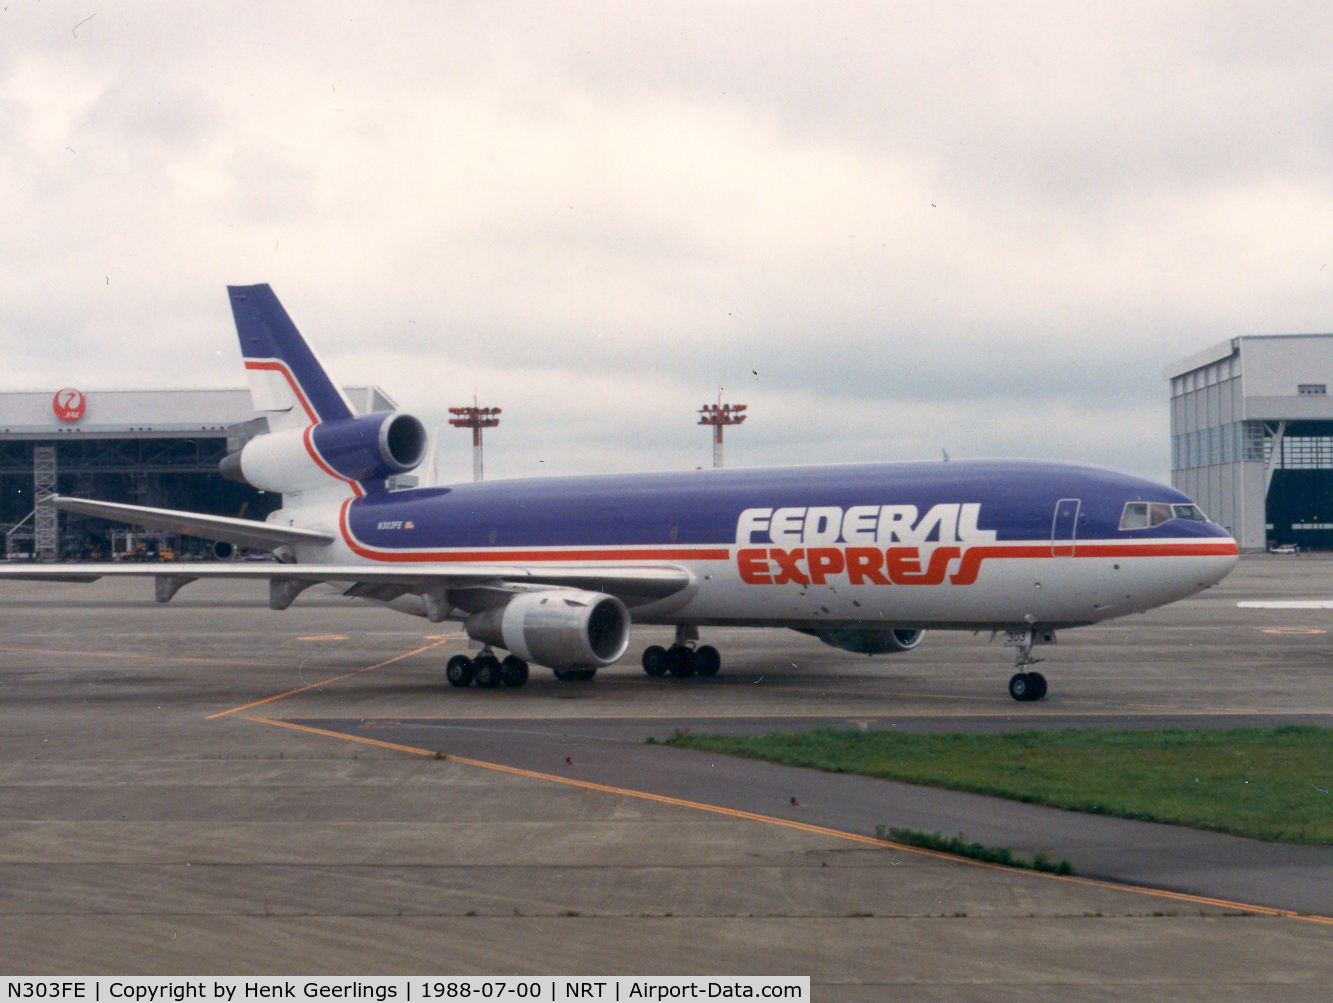 N303FE, 1973 McDonnell Douglas MD-10-30F C/N 46802, Federal Express